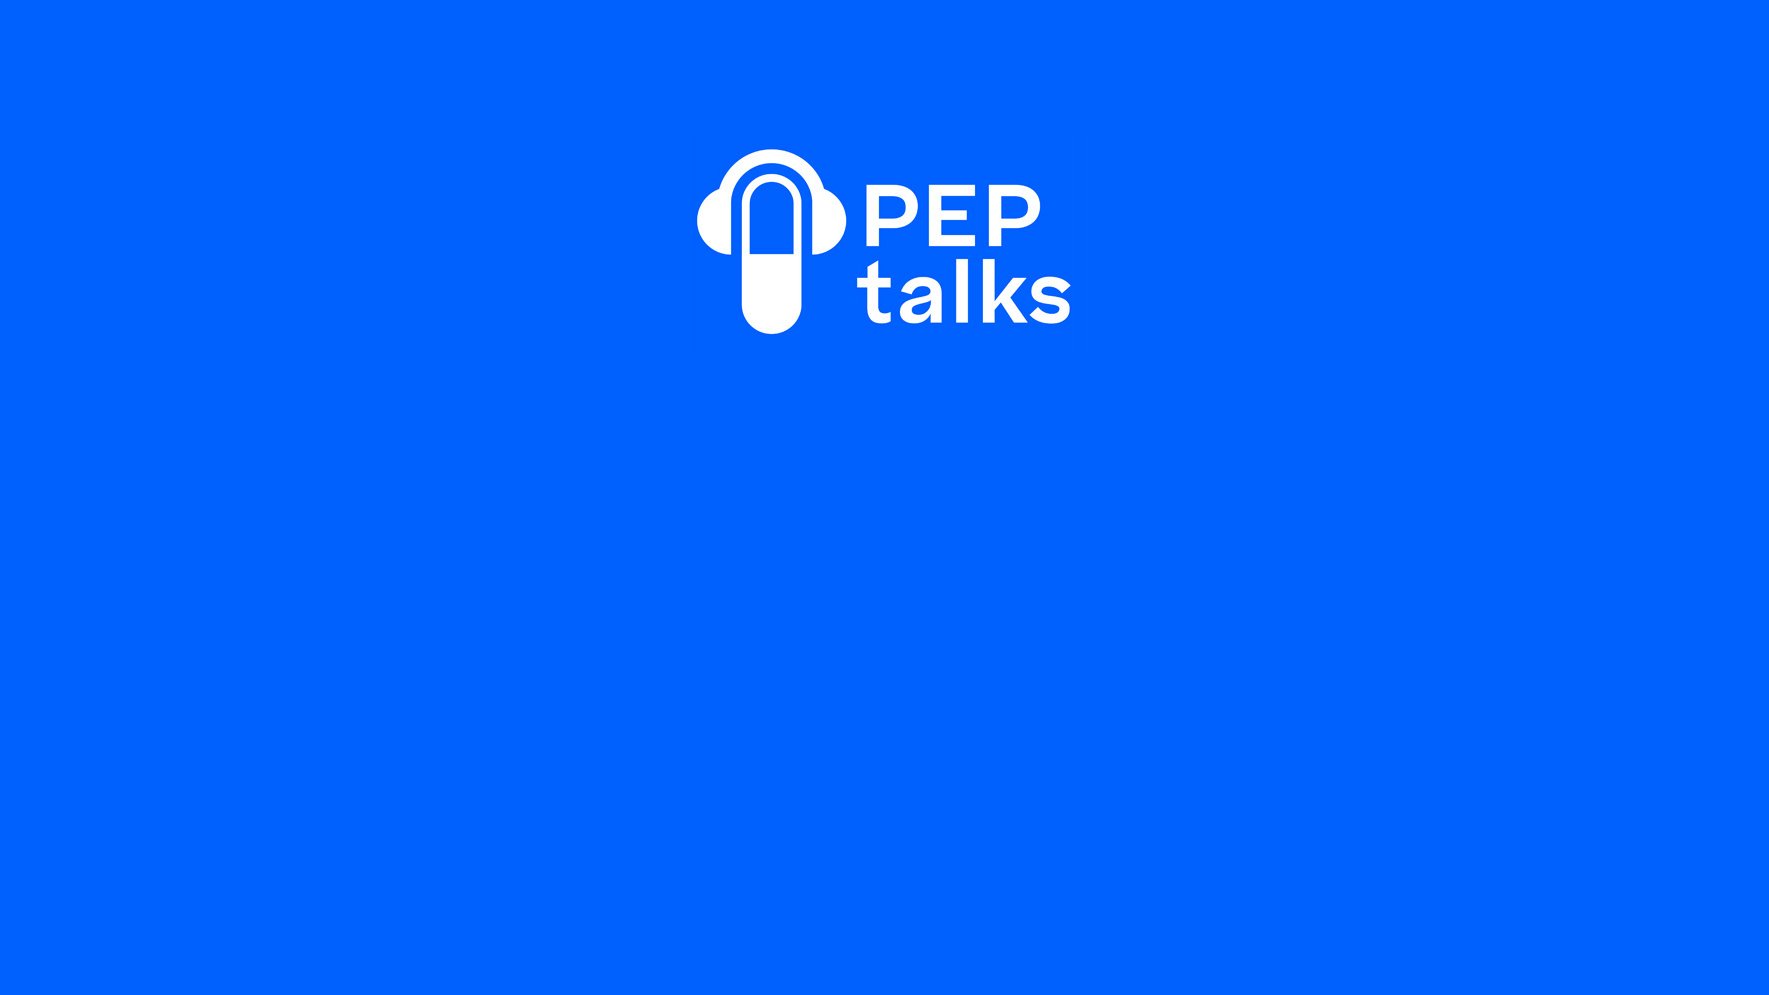 Willkommen bei unserem Podcast PEP talks